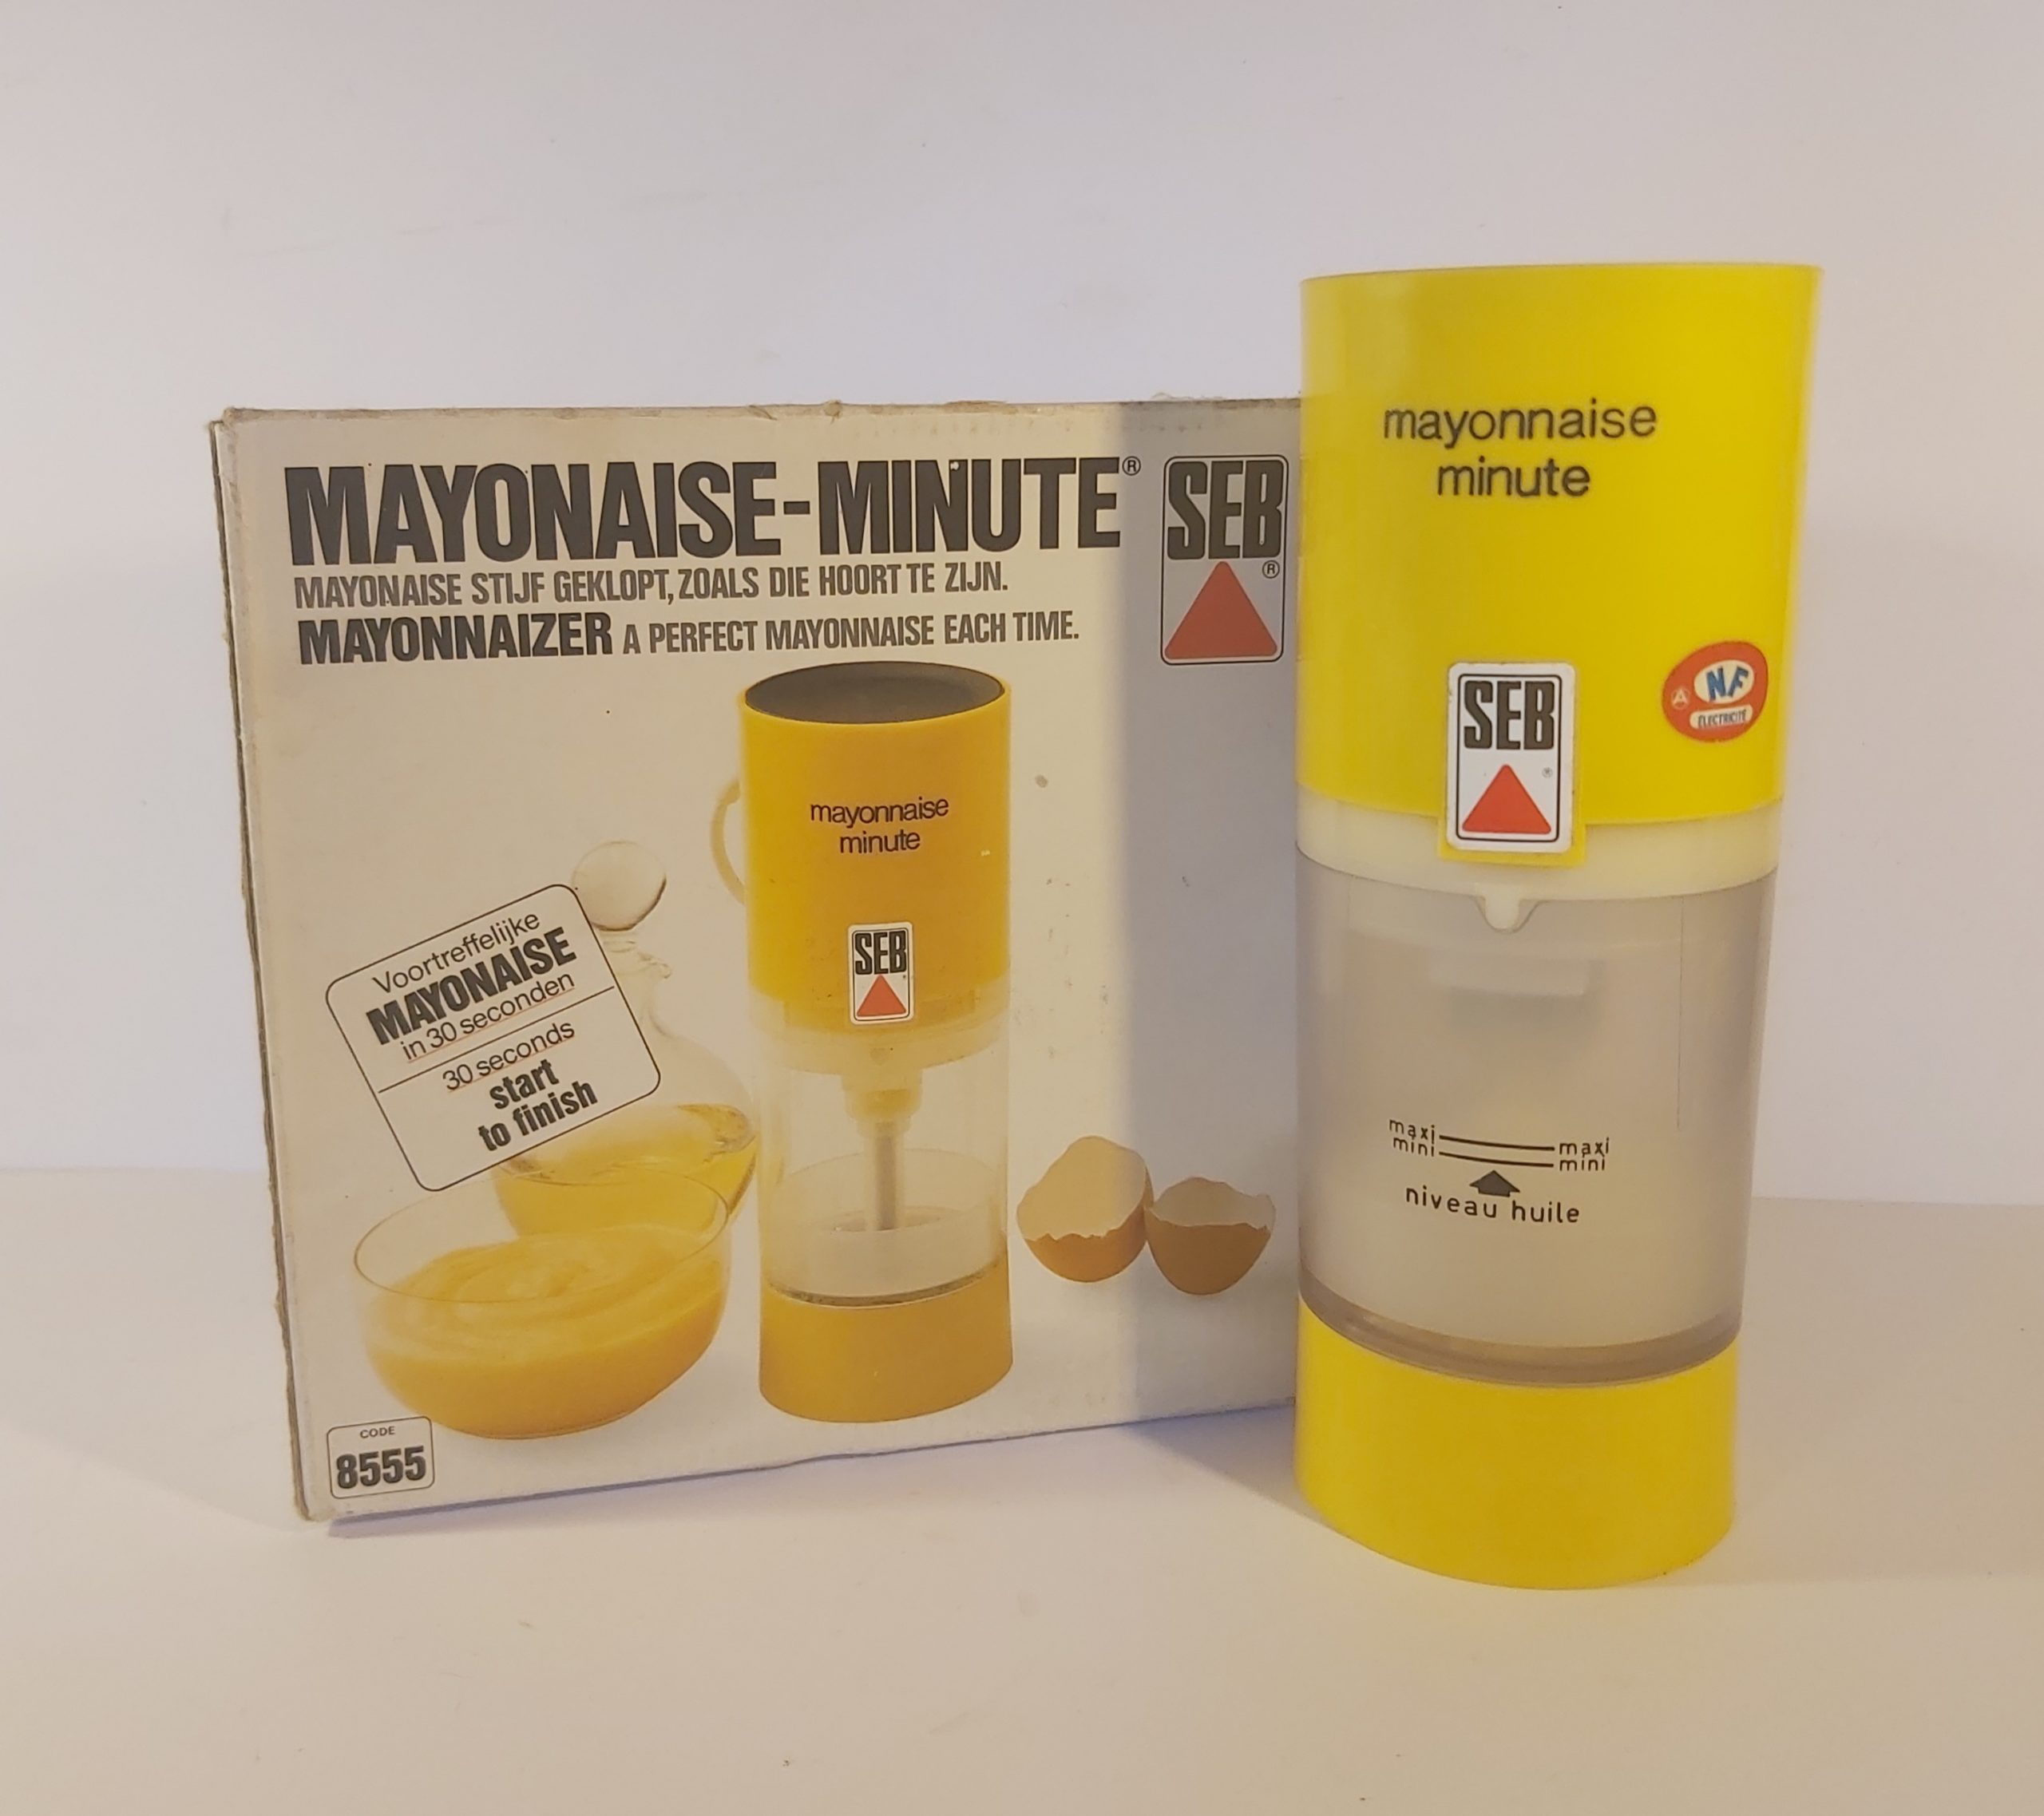 Mayonnaise minute de seb appareil a mayonnaise à Montpellier